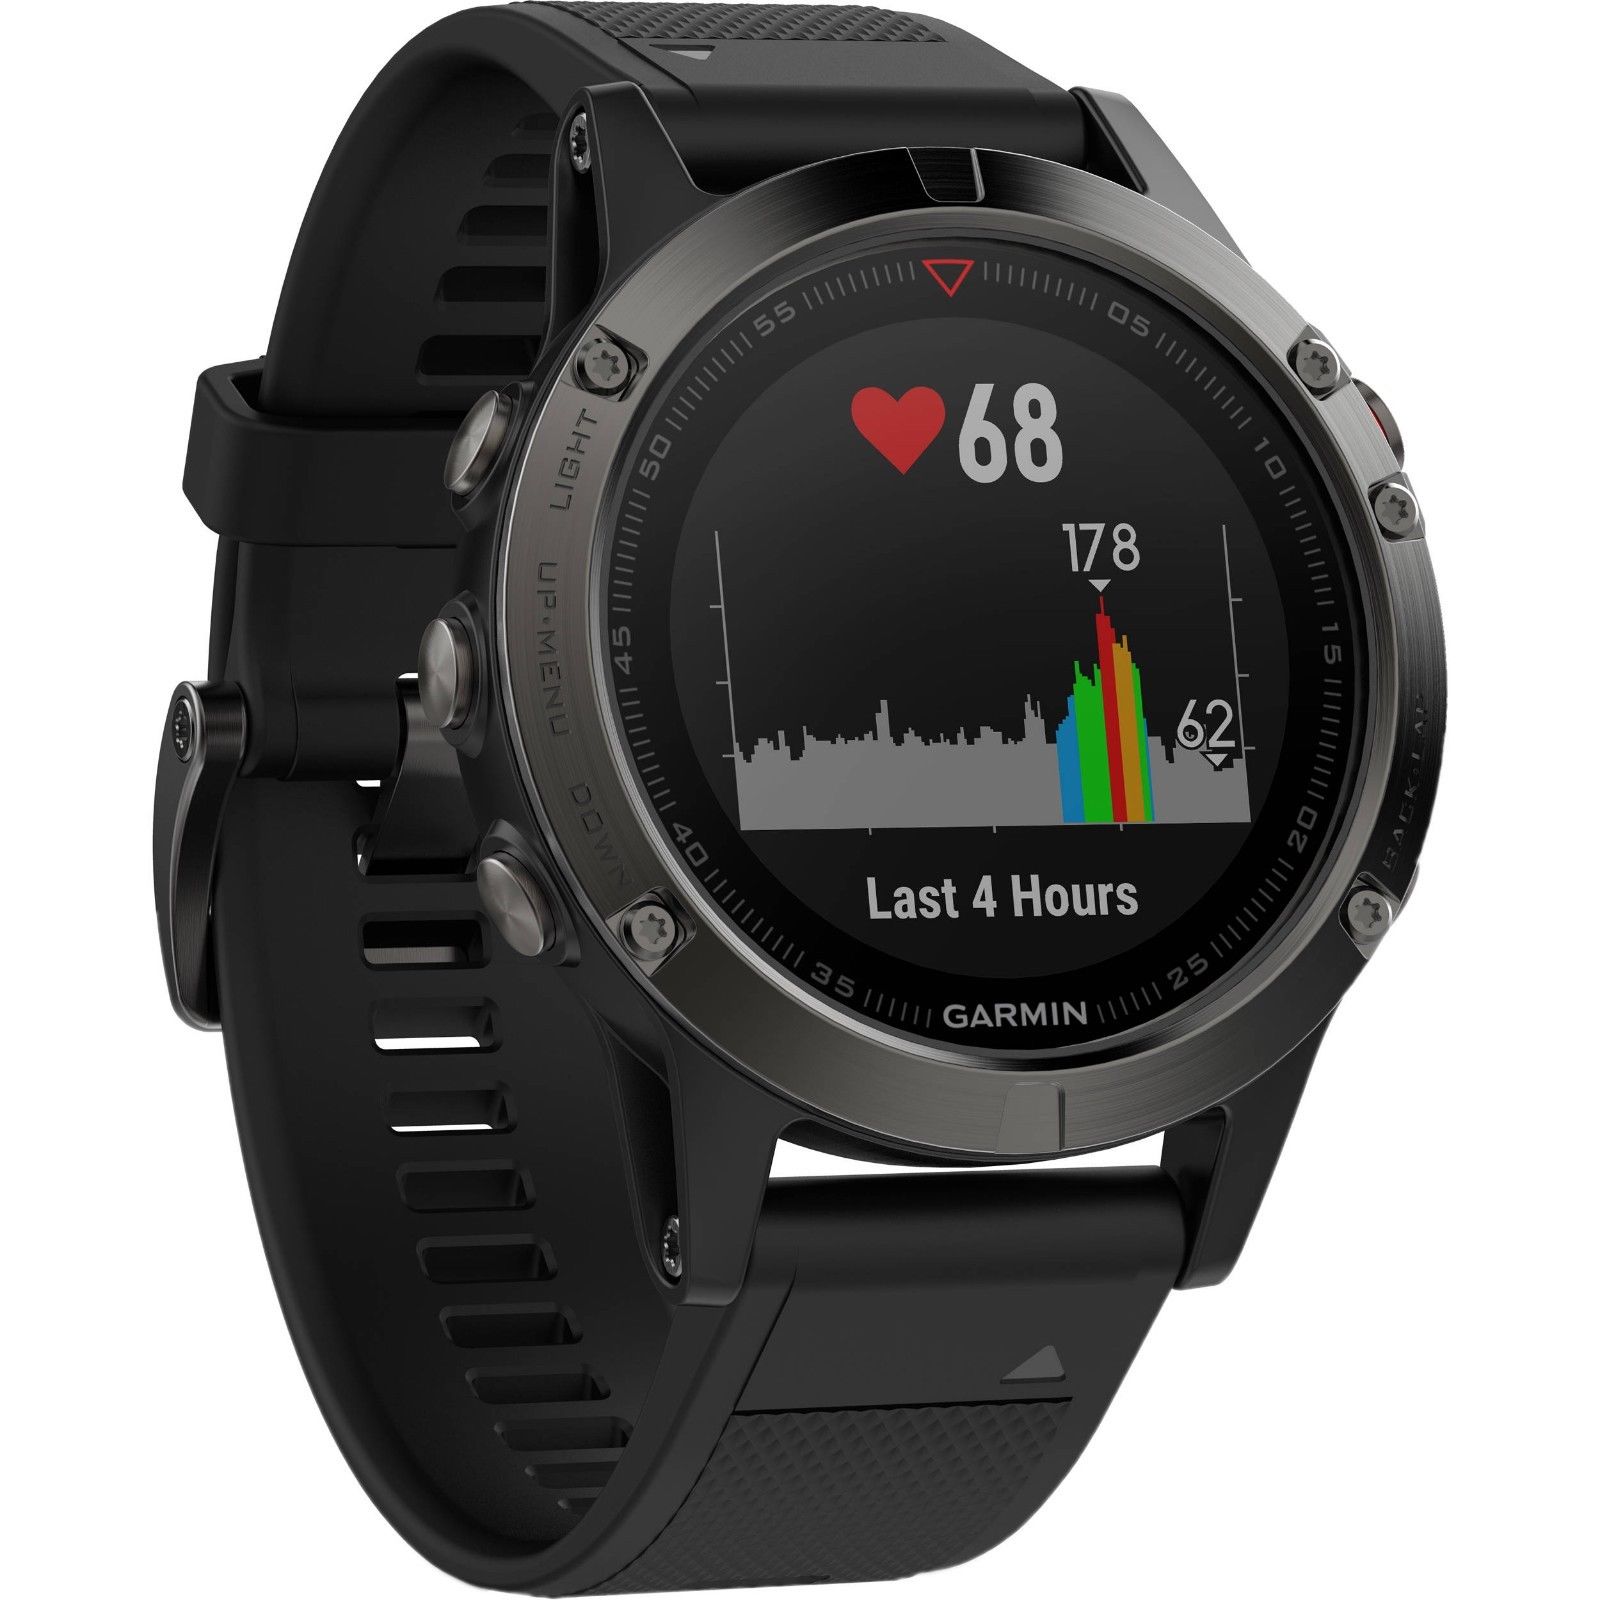 Garmin Fenix 5 Saphir Multisport GPS -Smartwatch - Saphir Edition Wi-Fi fähig